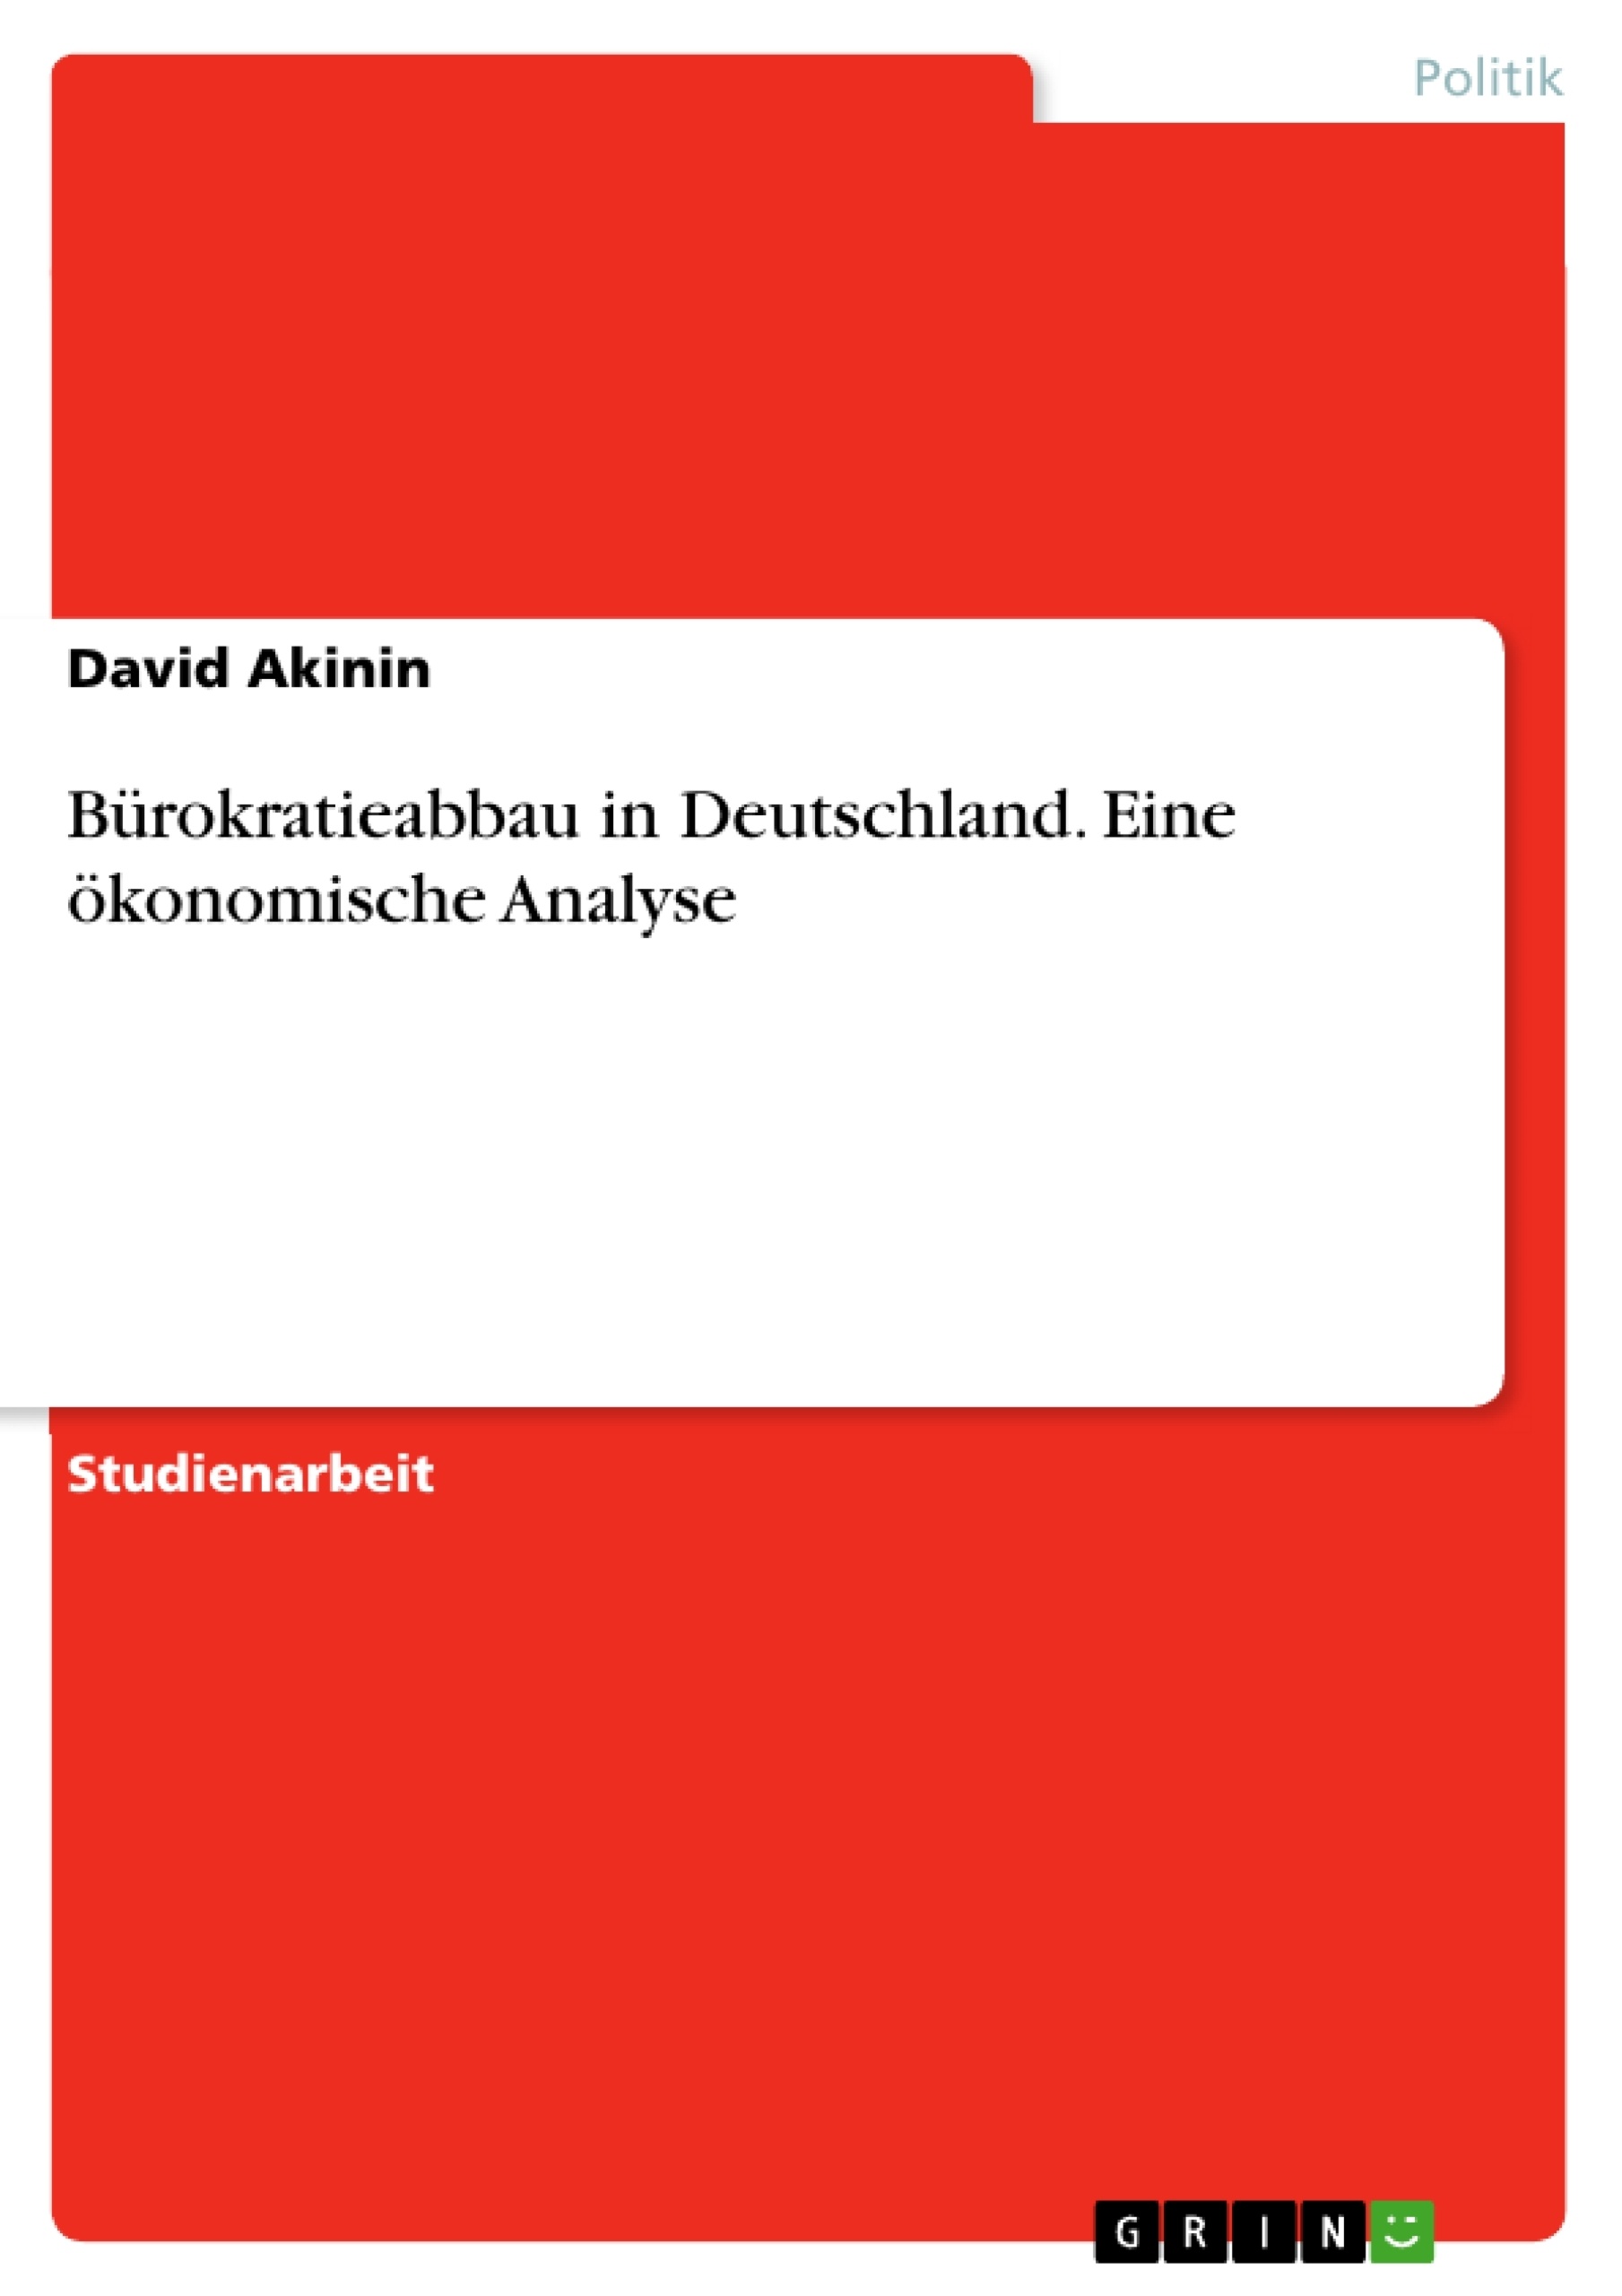 Titre: Bürokratieabbau in Deutschland. Eine ökonomische Analyse